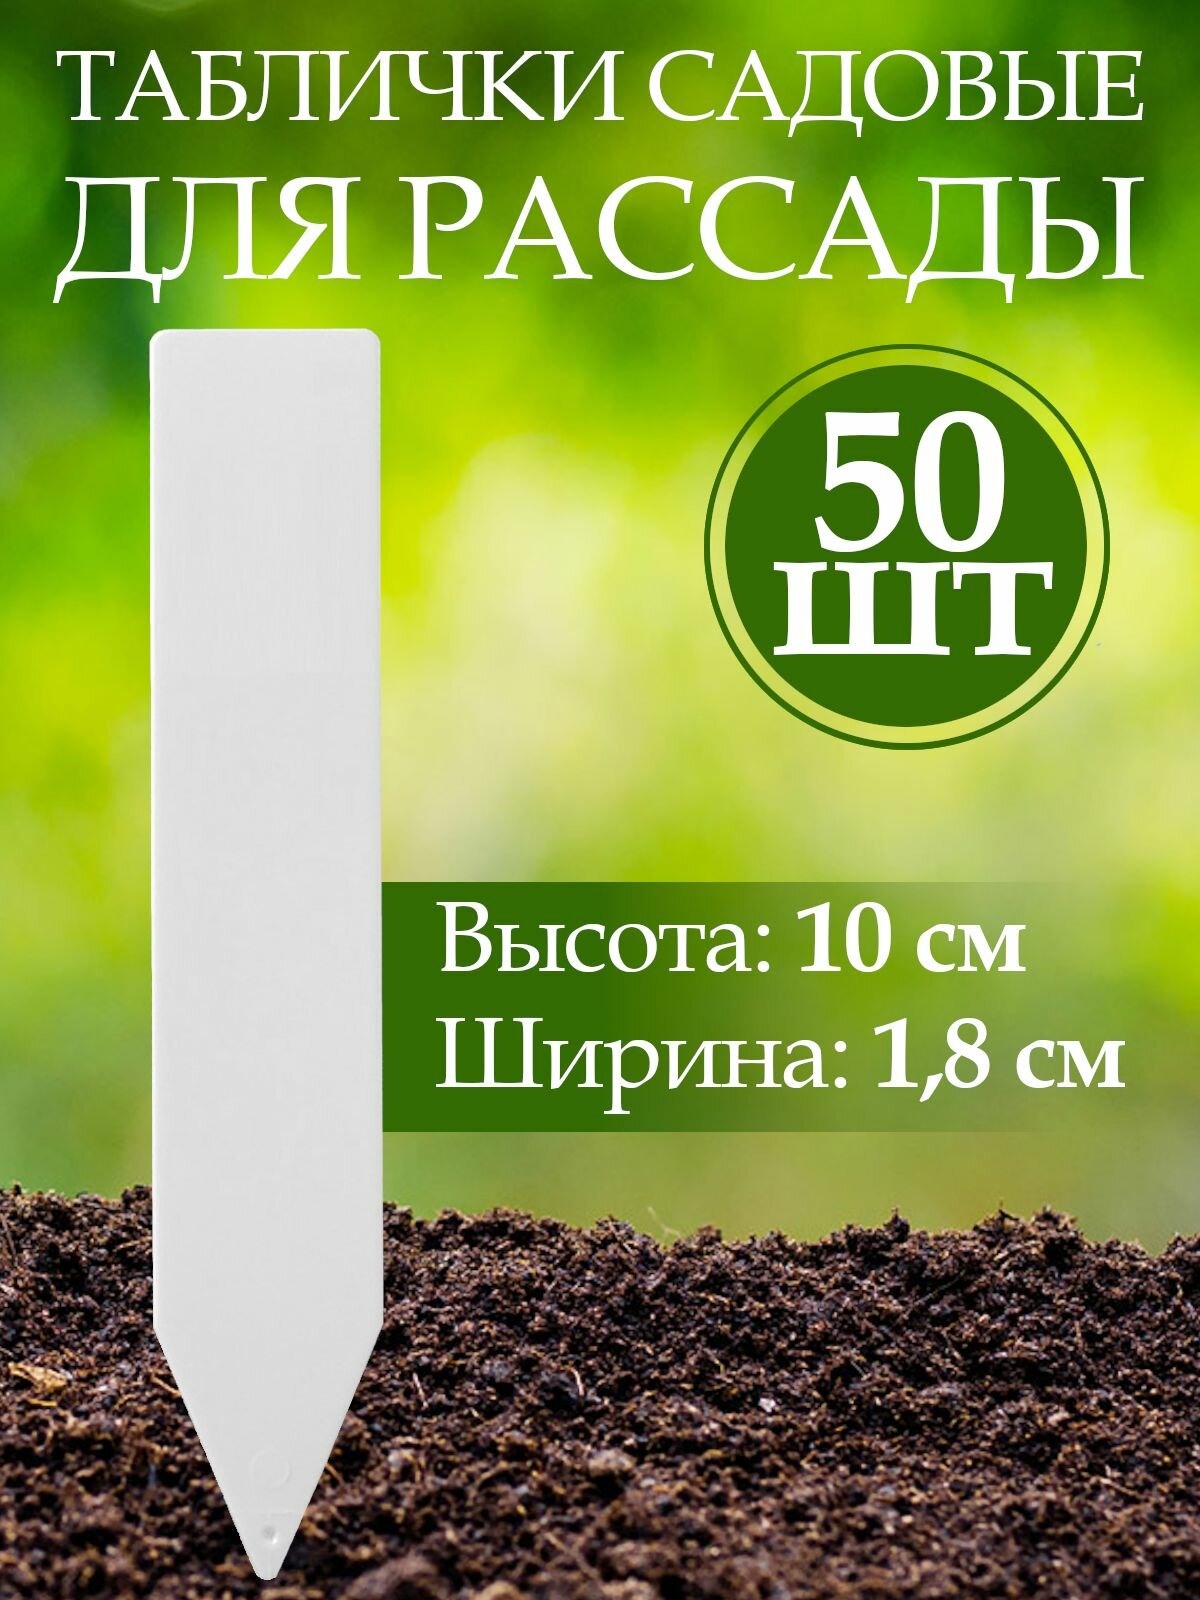 Набор табличек садовых для растений, пластик, h 10 см, d 1,8 см, 50 шт.